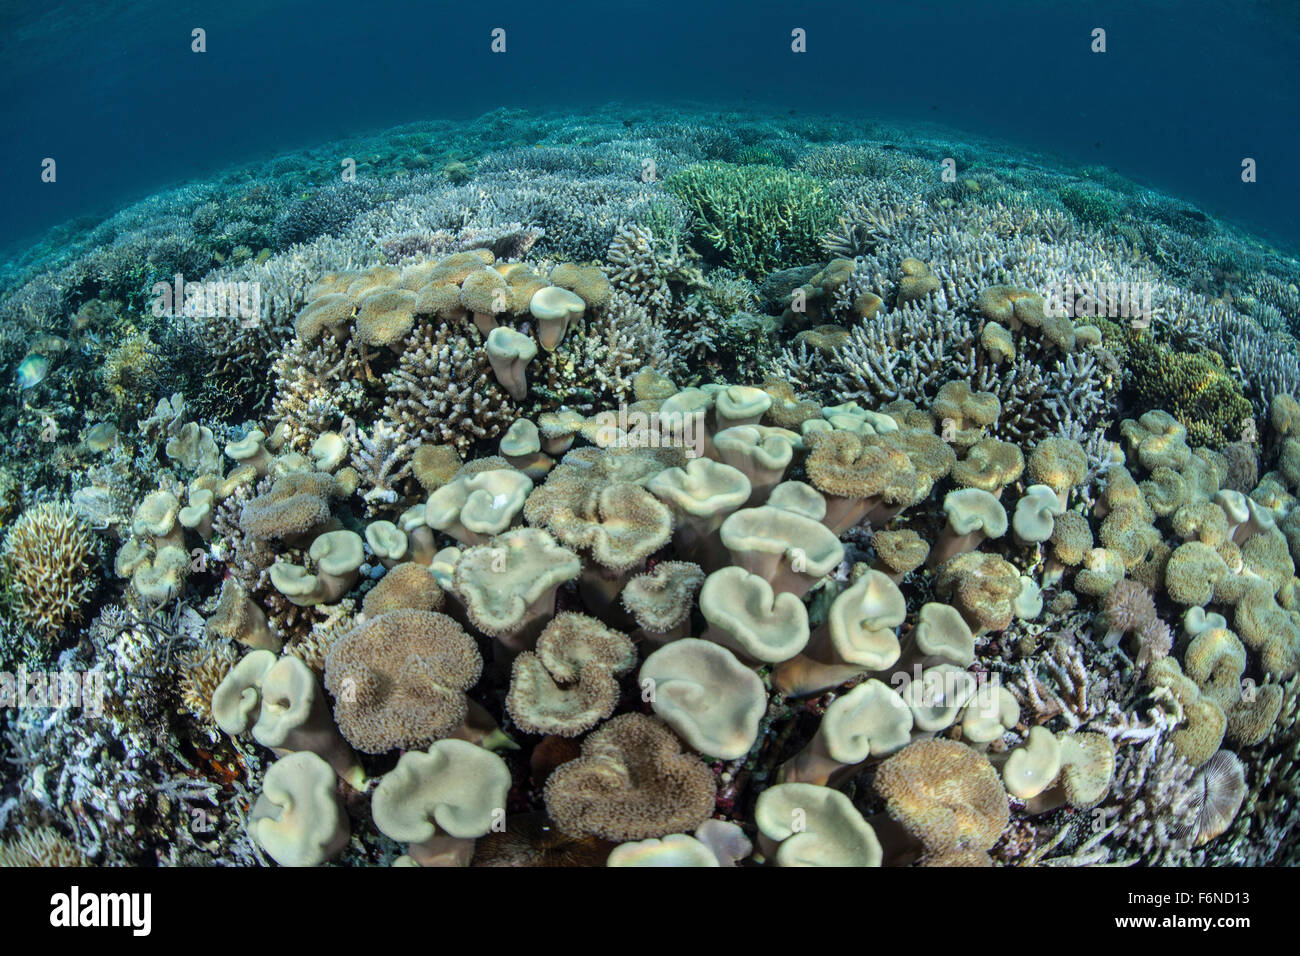 Fungo e coralli duri prosperano in acque poco profonde in Alor, Indonesia. Questa remota regione è nota per le sue belle barriere coralline e spe Foto Stock